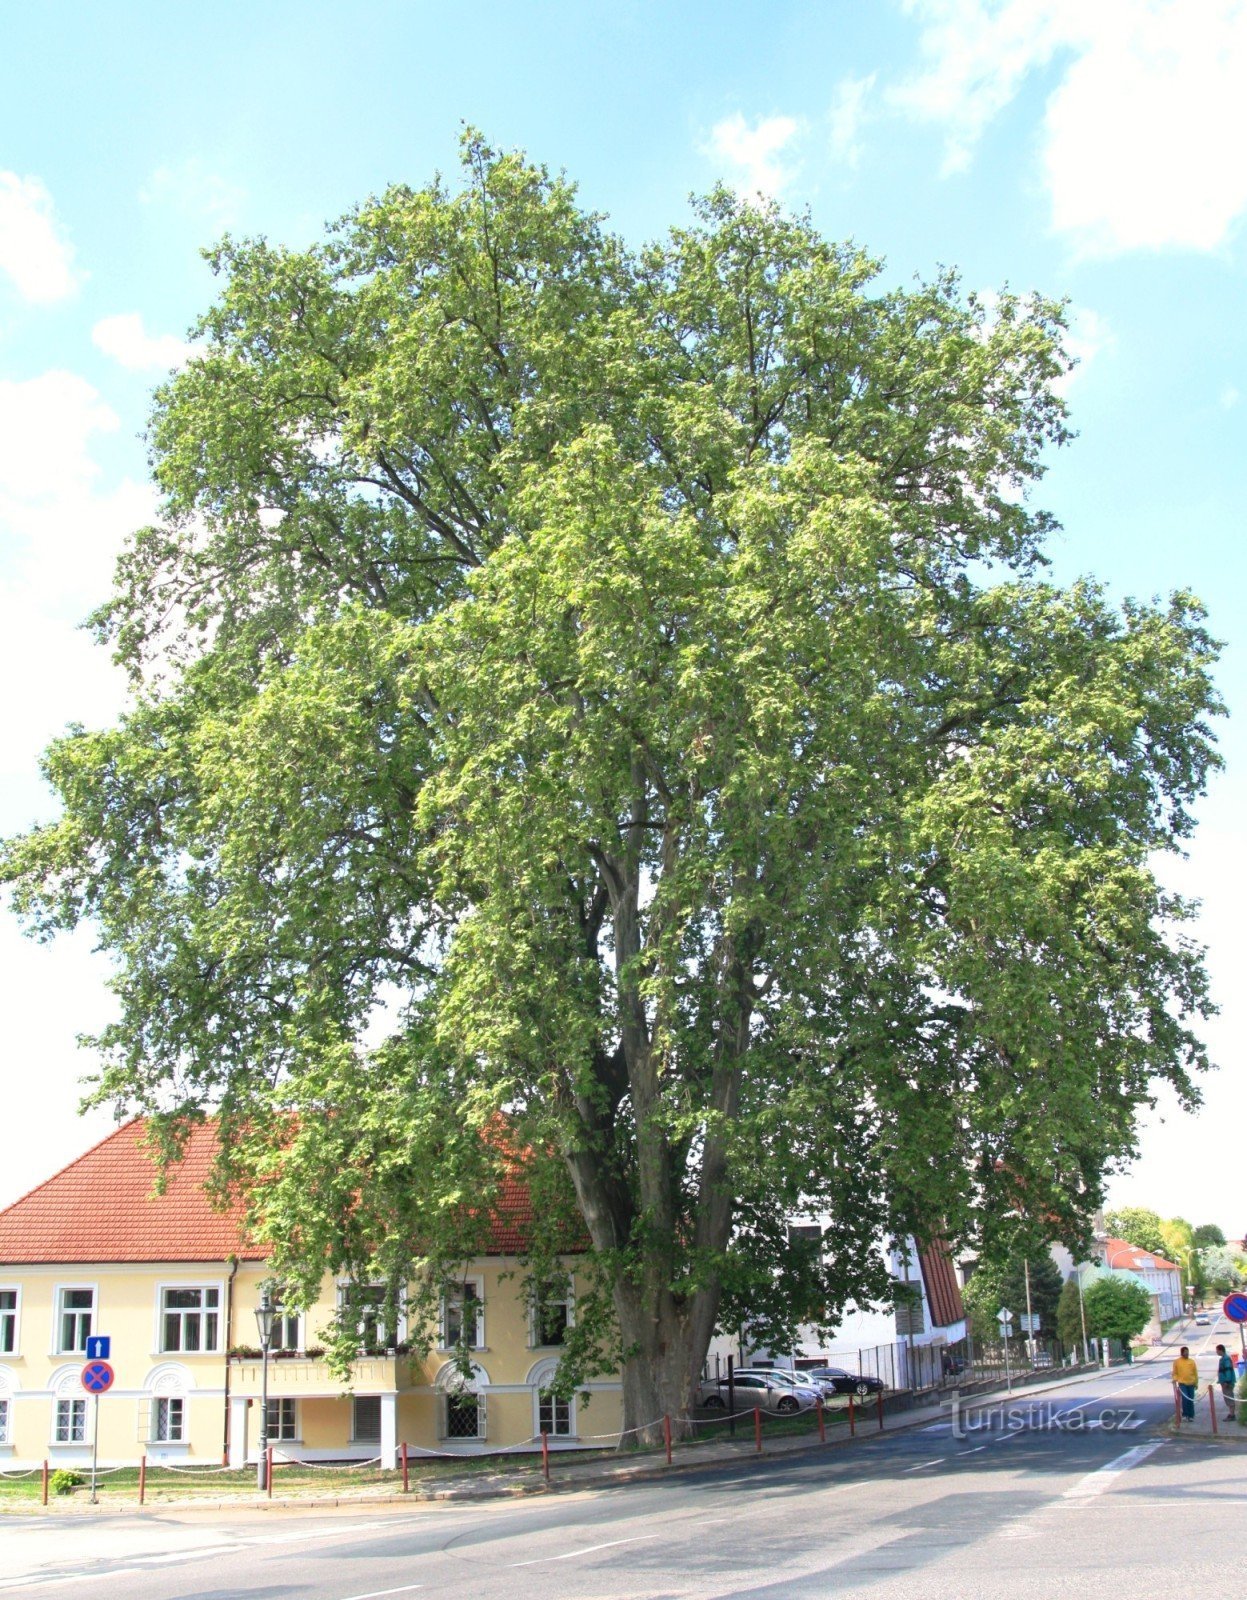 Mikulov - árbol de plátano conmemorativo